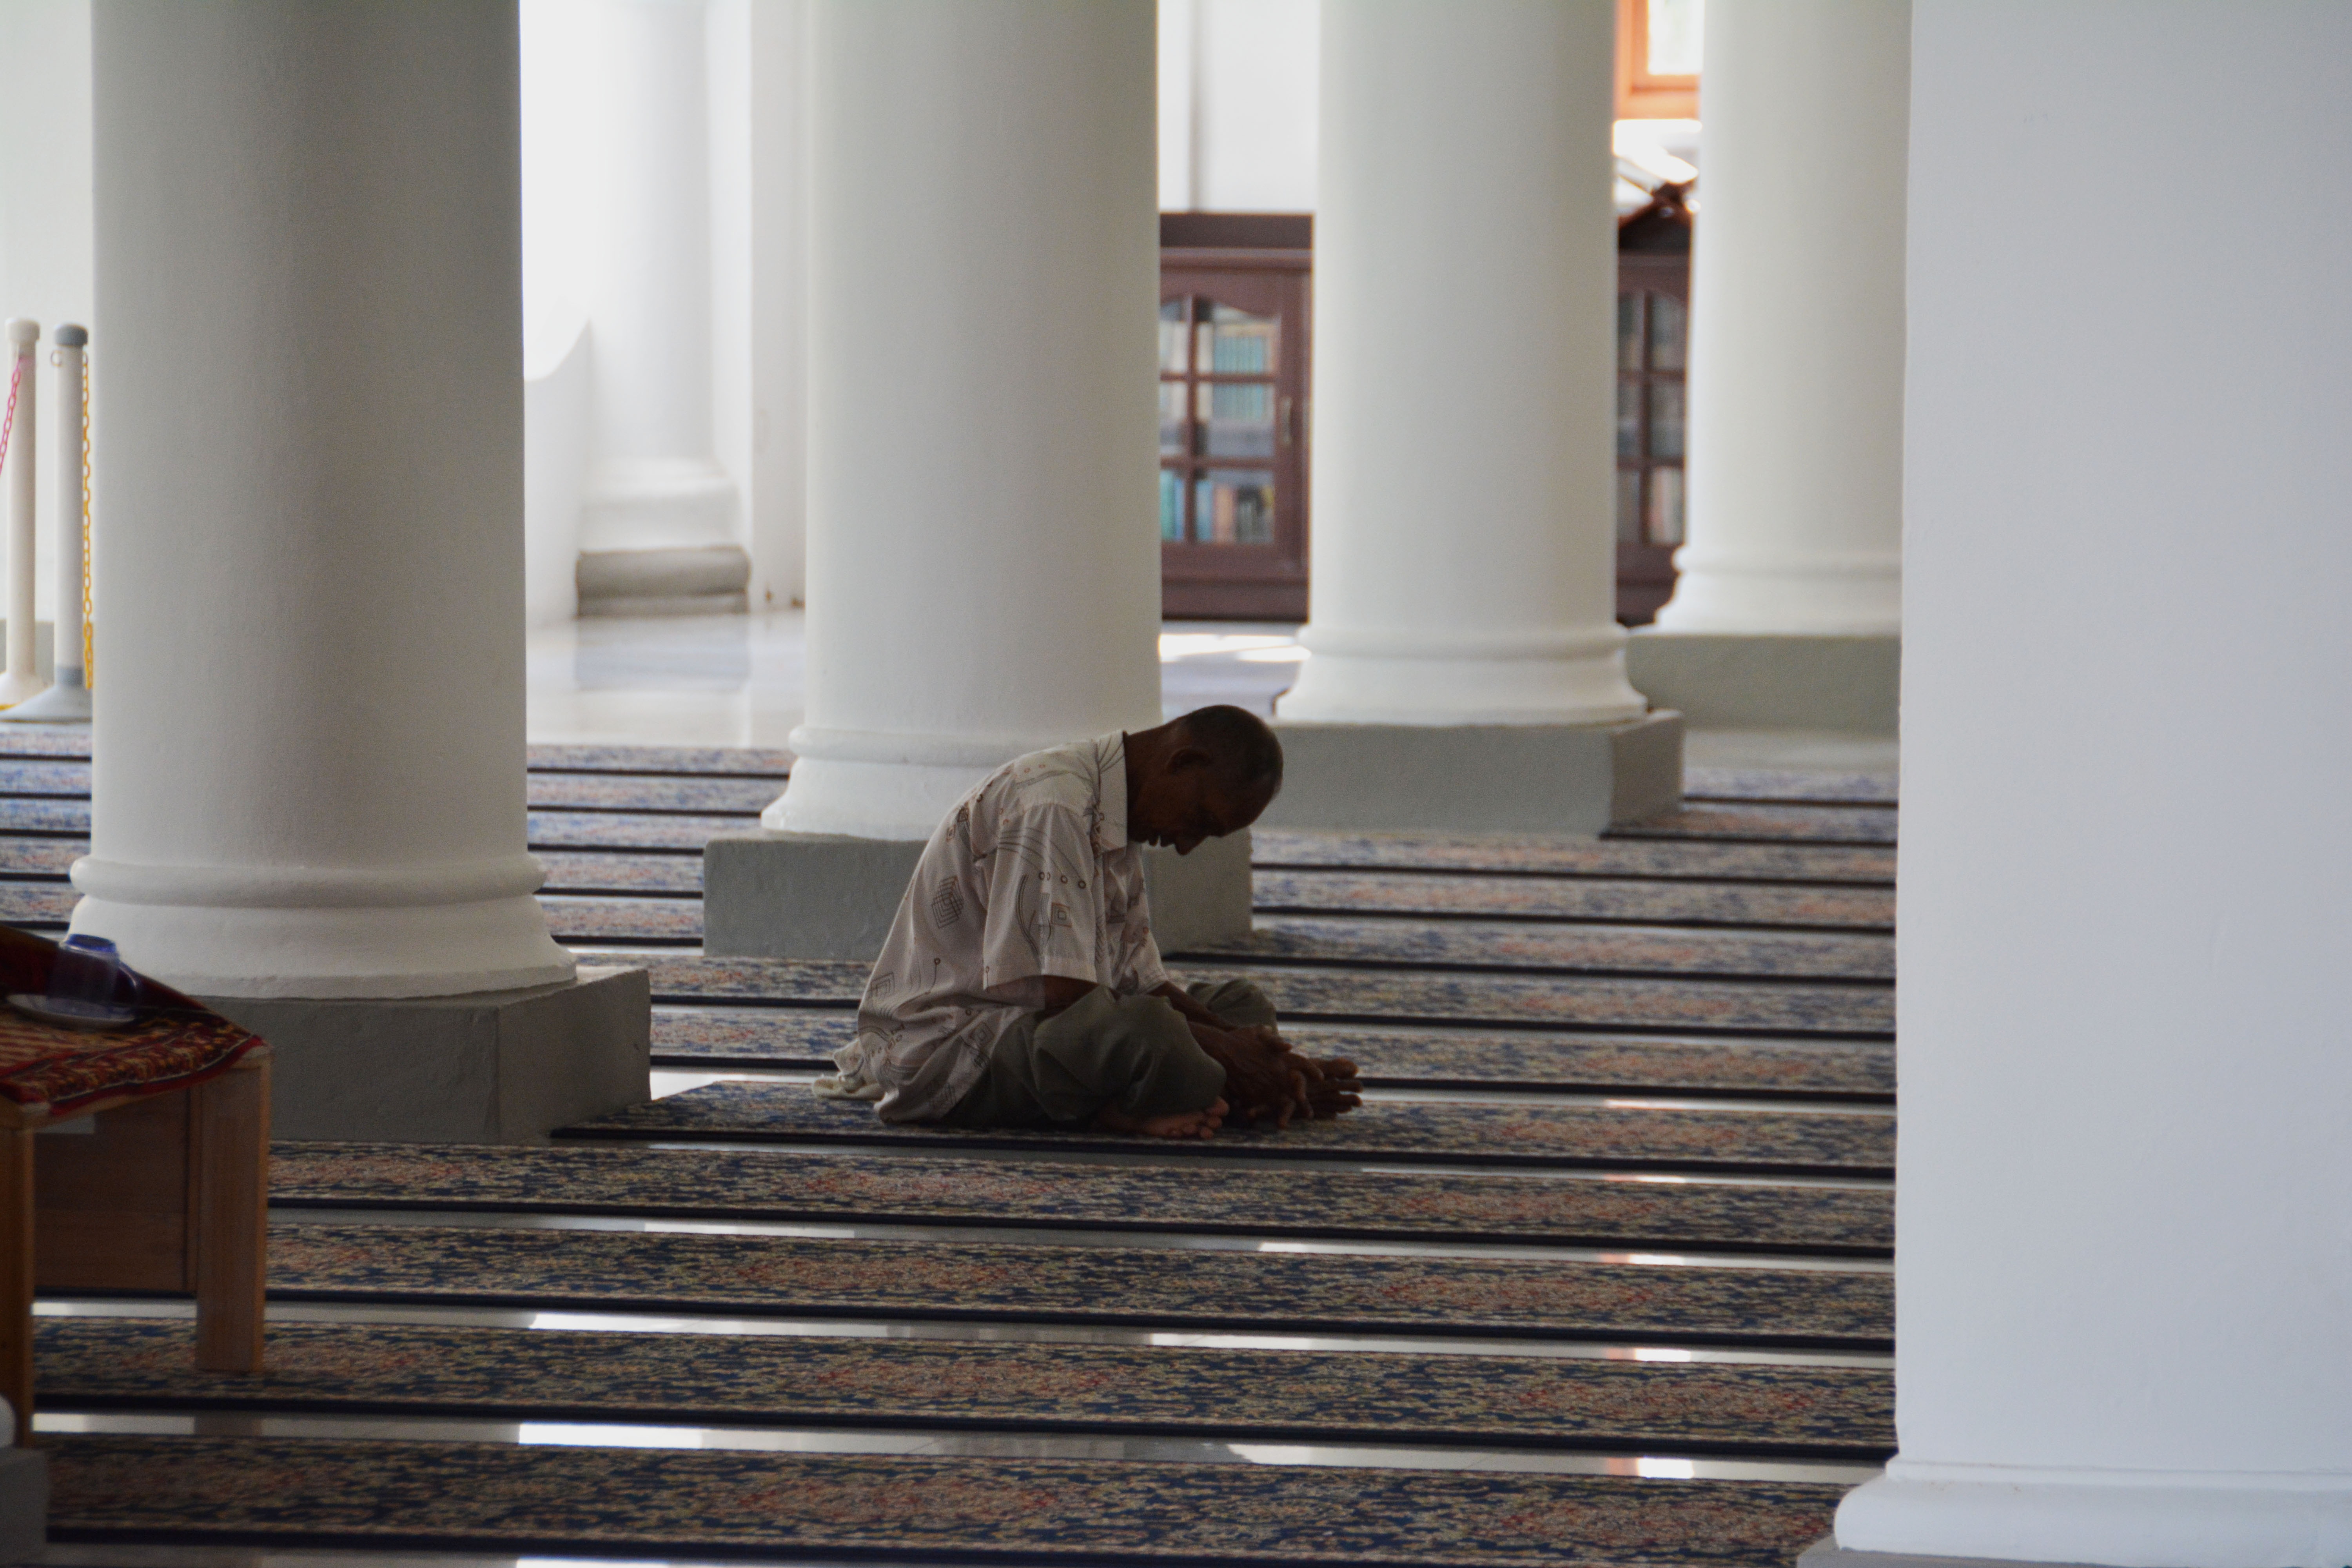 Храм молчание. Молитва в мечети. Мусульманин молится. Пол в мечети. Арабы молятся.